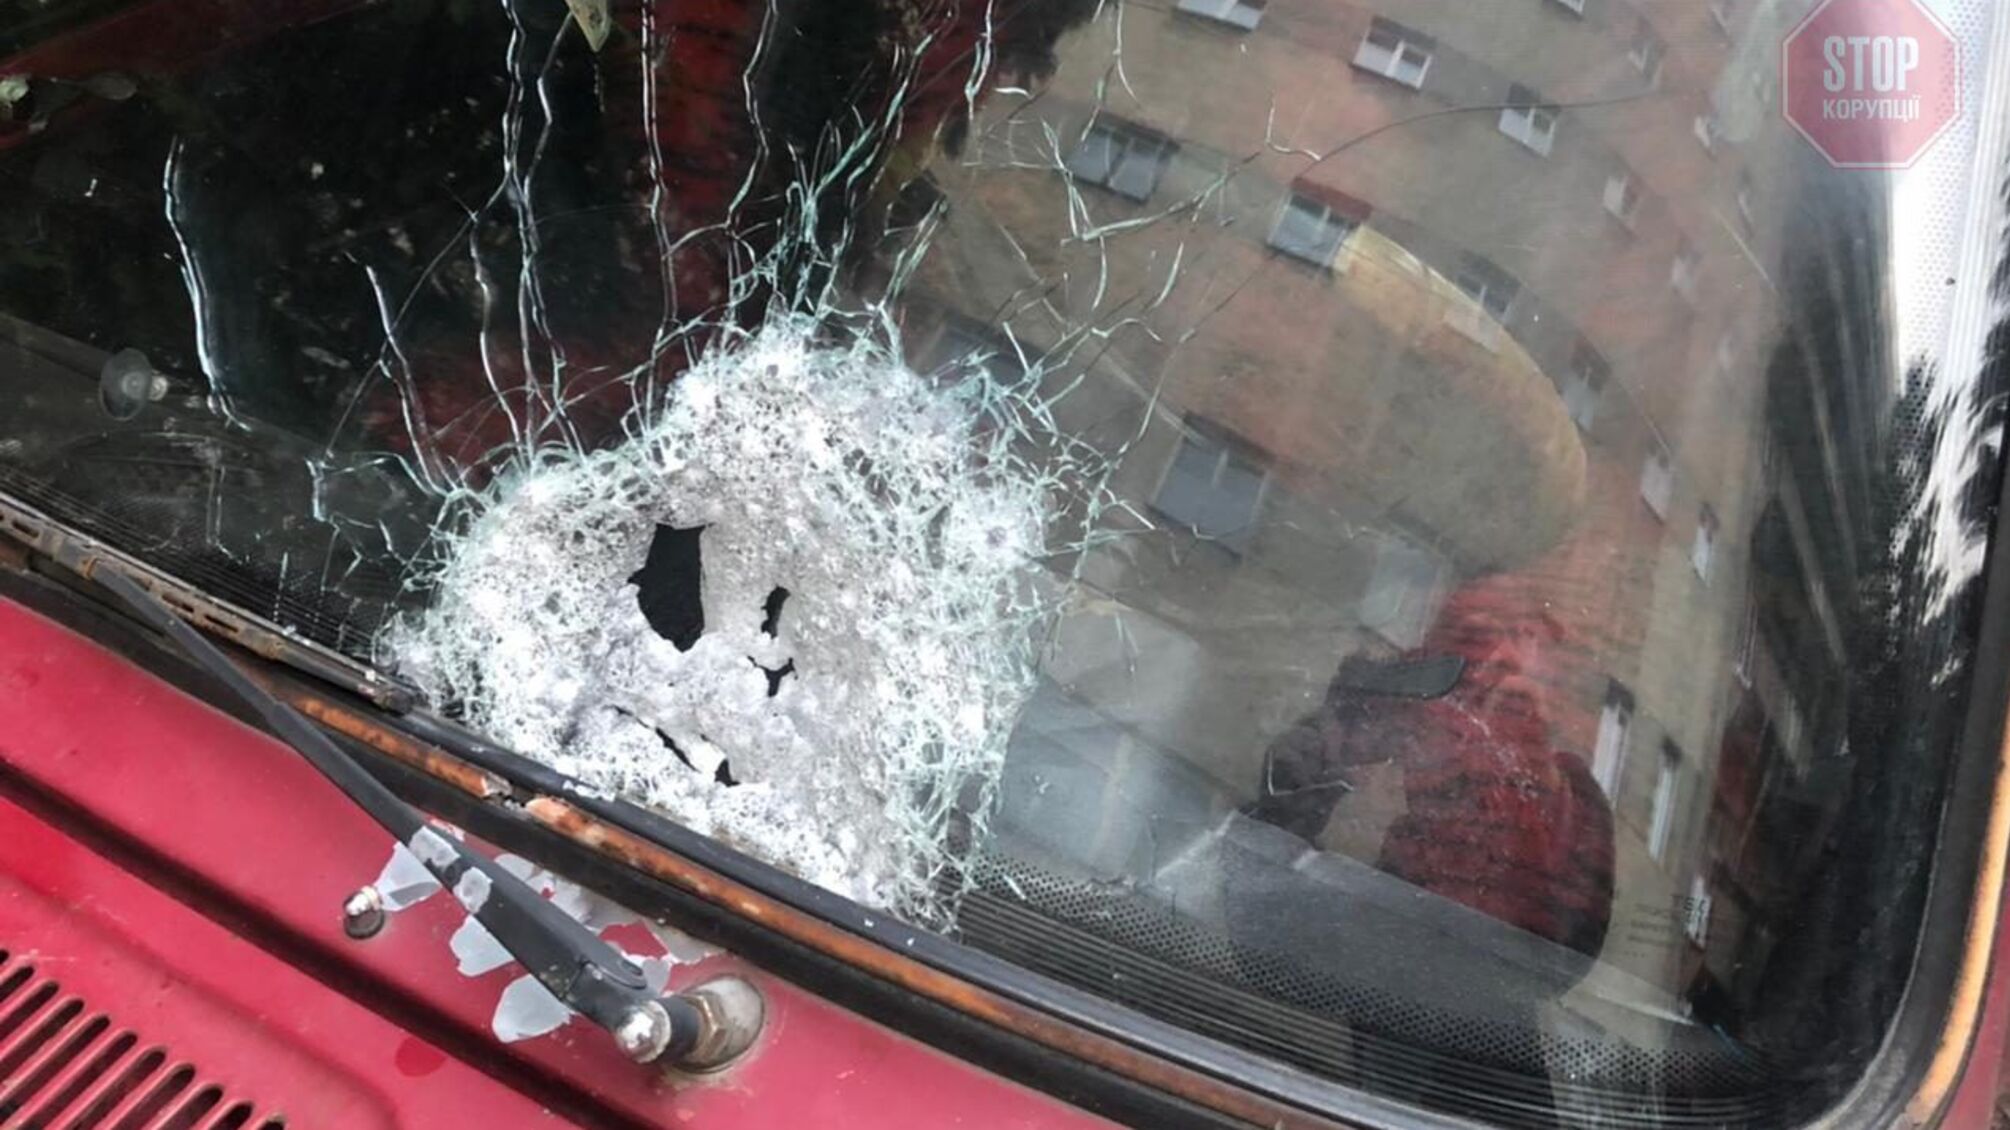 В Чернівцях невідомі розстріляли автомобіль з людьми, є поранені